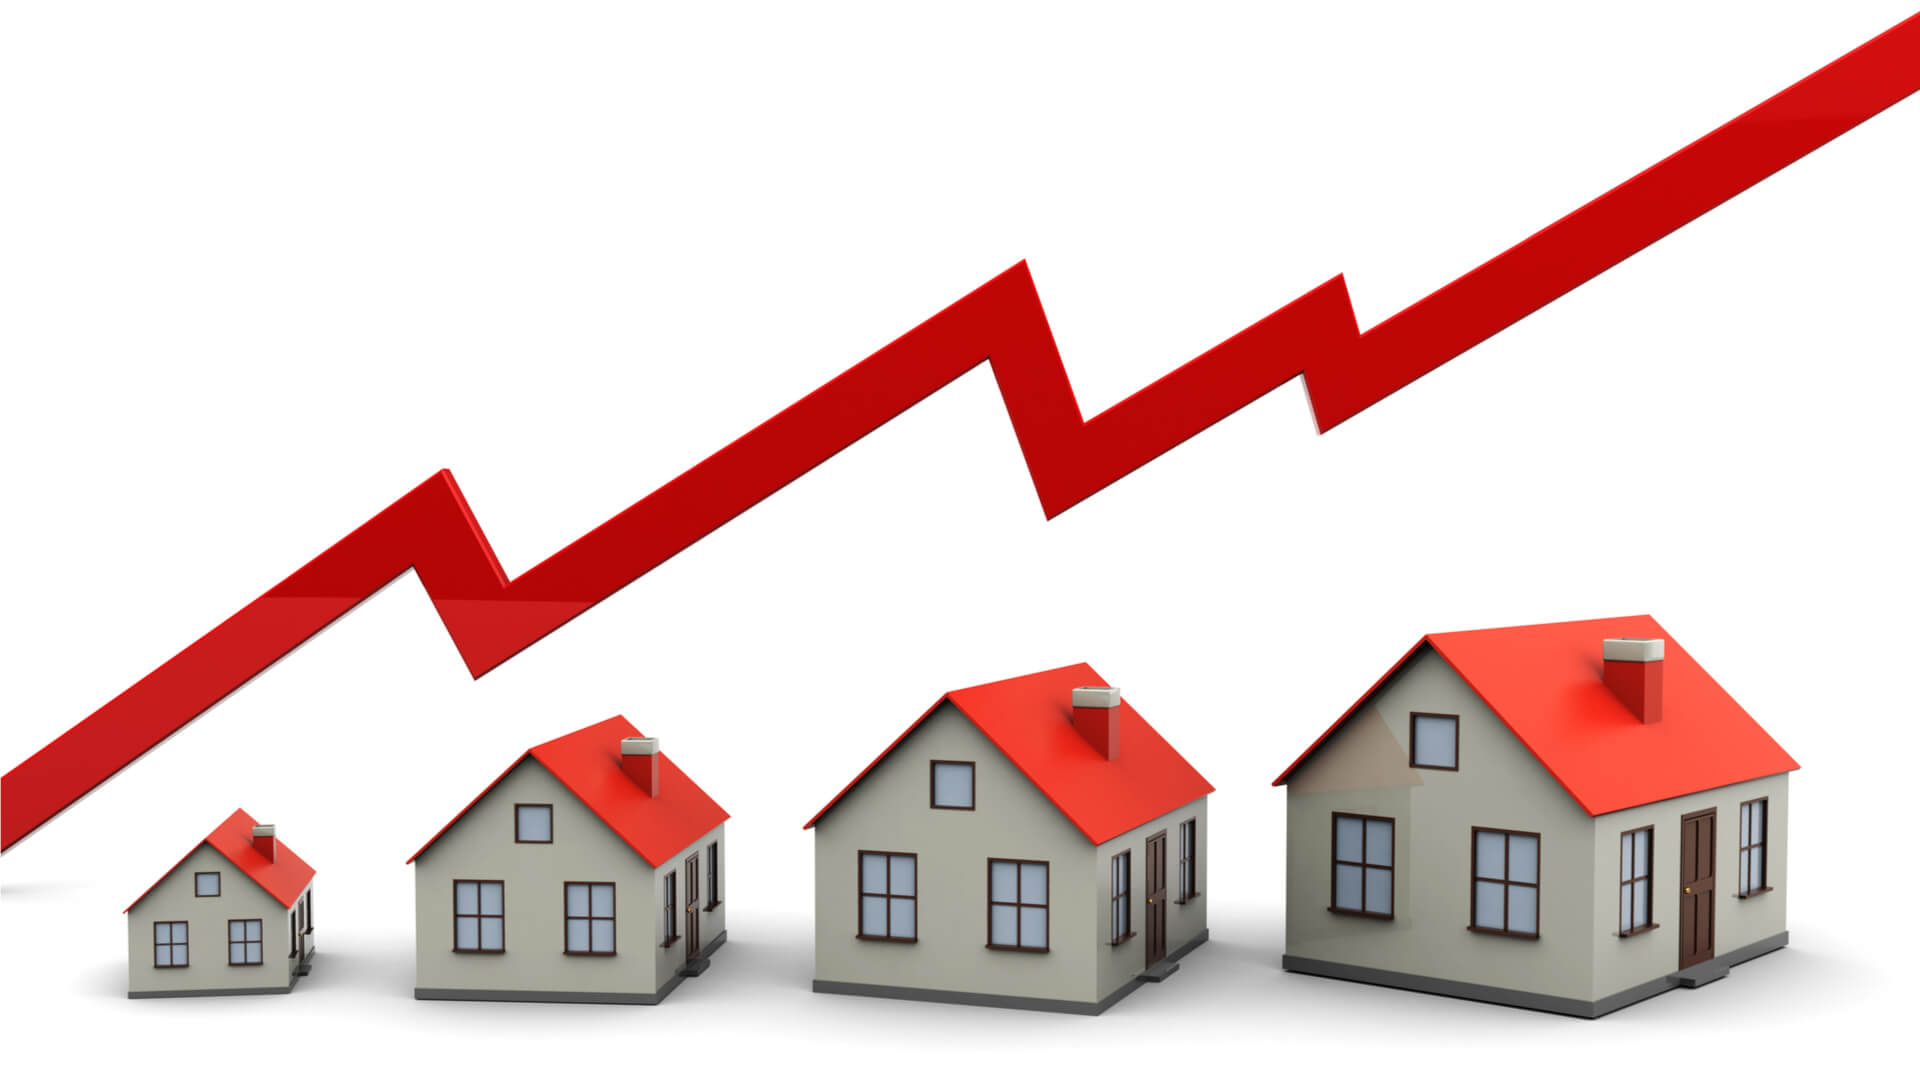 Compravendite immobiliari, una forte crescita - Guidafinestra